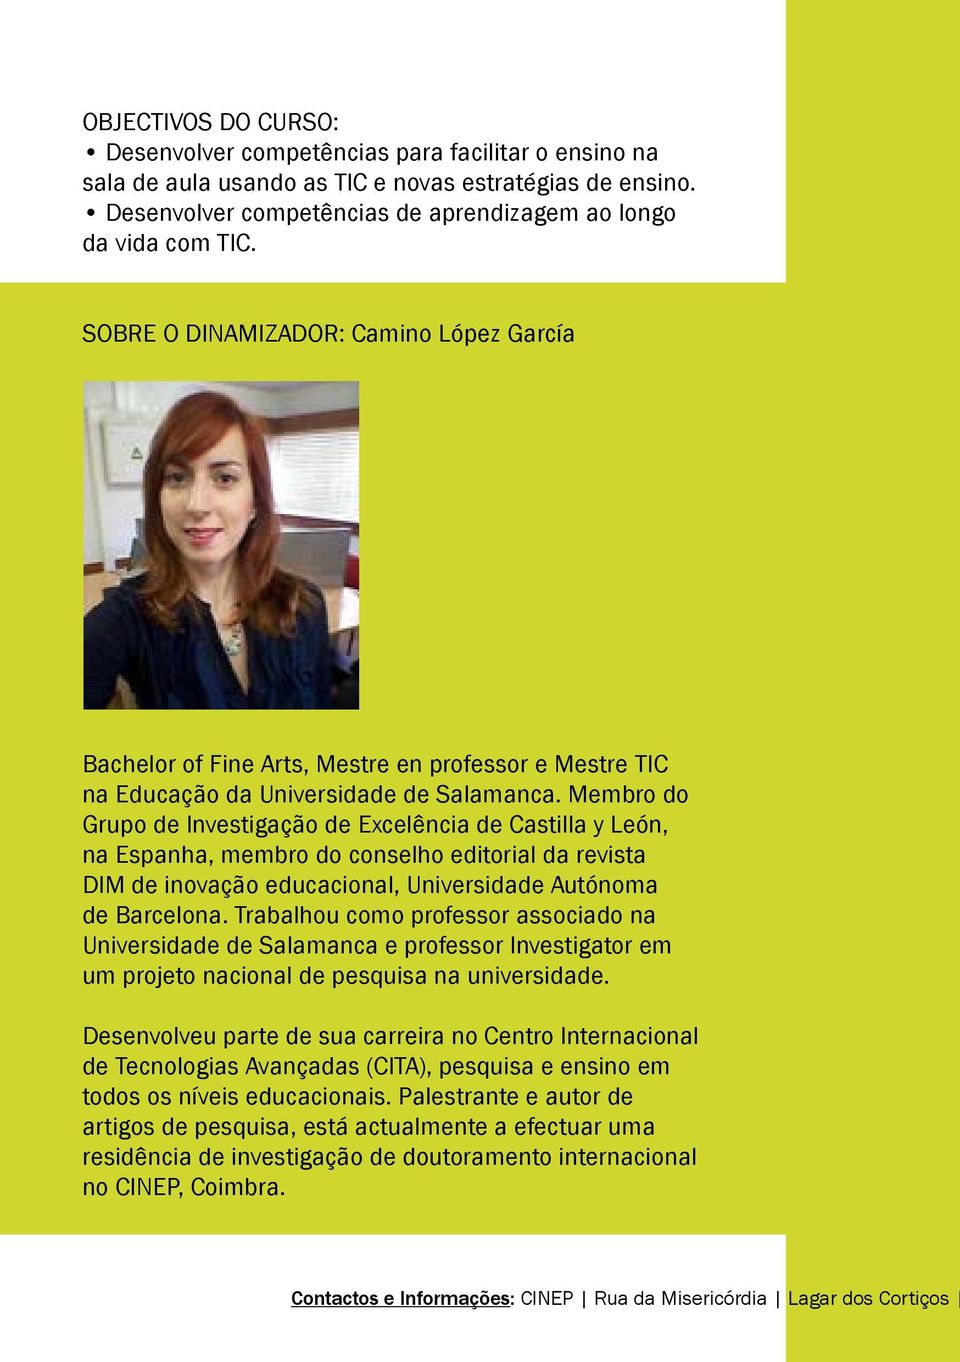 Membro do Grupo de Investigação de Excelência de Castilla y León, na Espanha, membro do conselho editorial da revista DIM de inovação educacional, Universidade Autónoma de Barcelona.